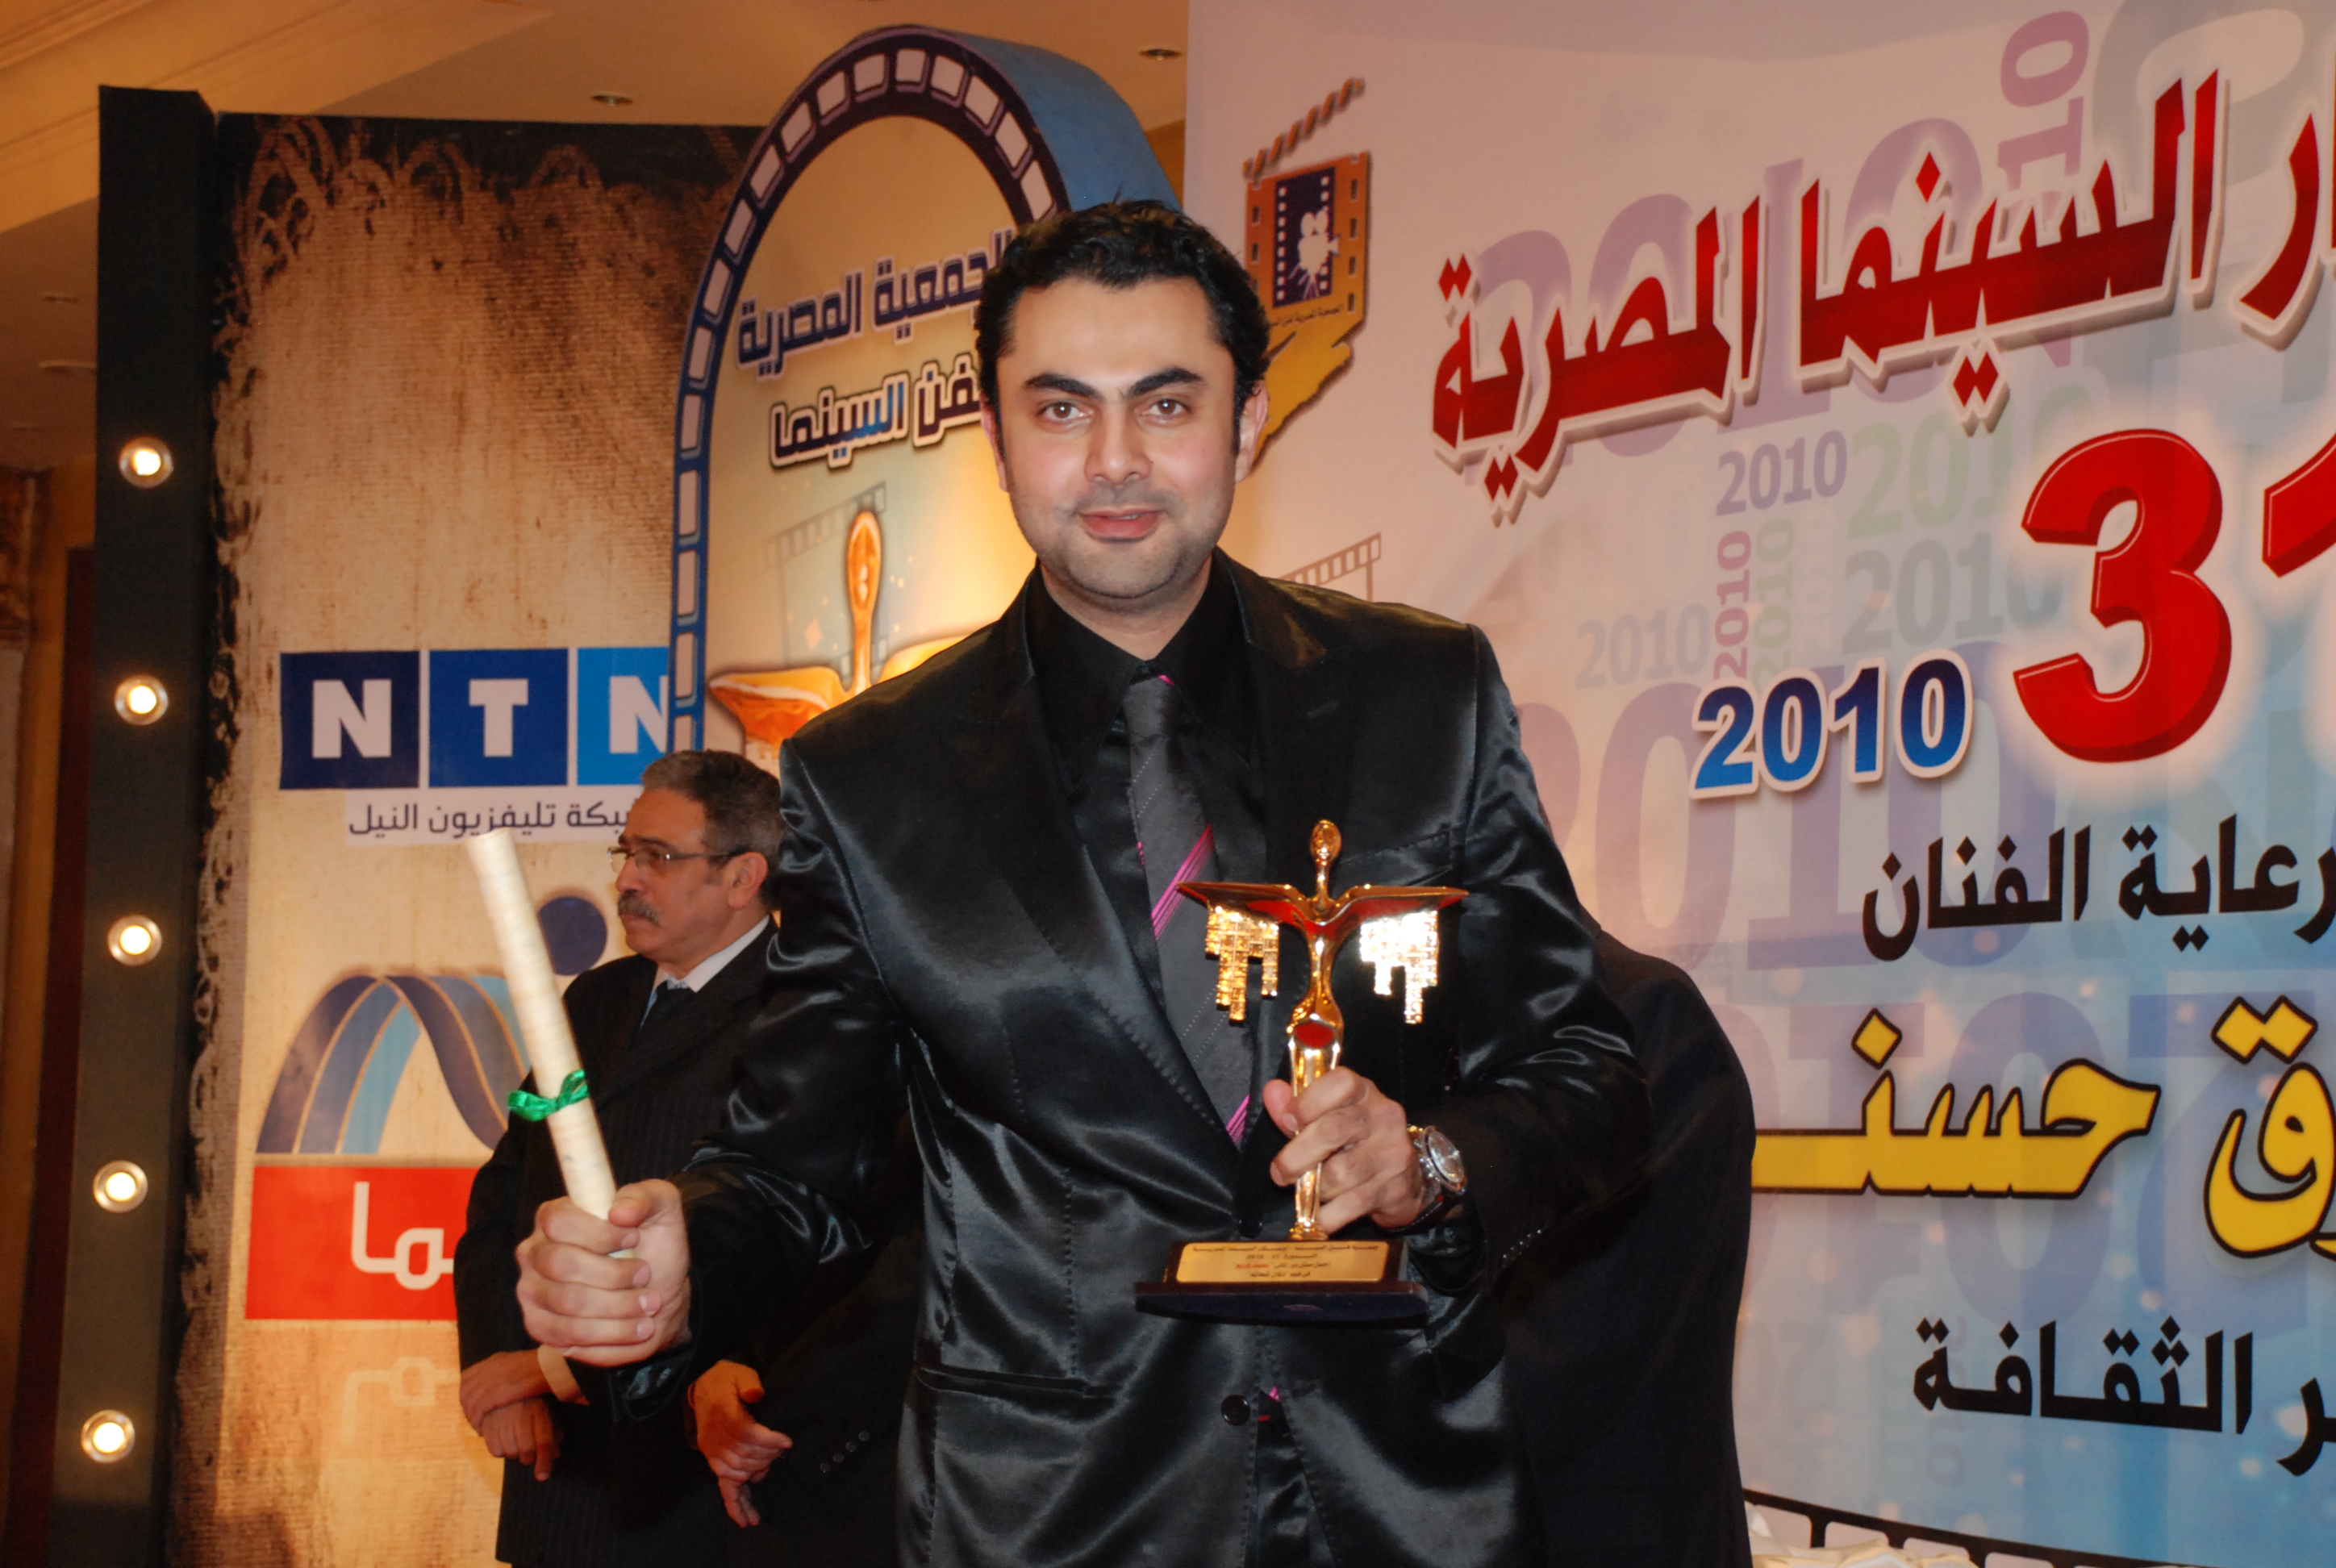 Mohamed Karim, 2010 Best Actor Award in Oscars Egyptian Cinema Festival for 